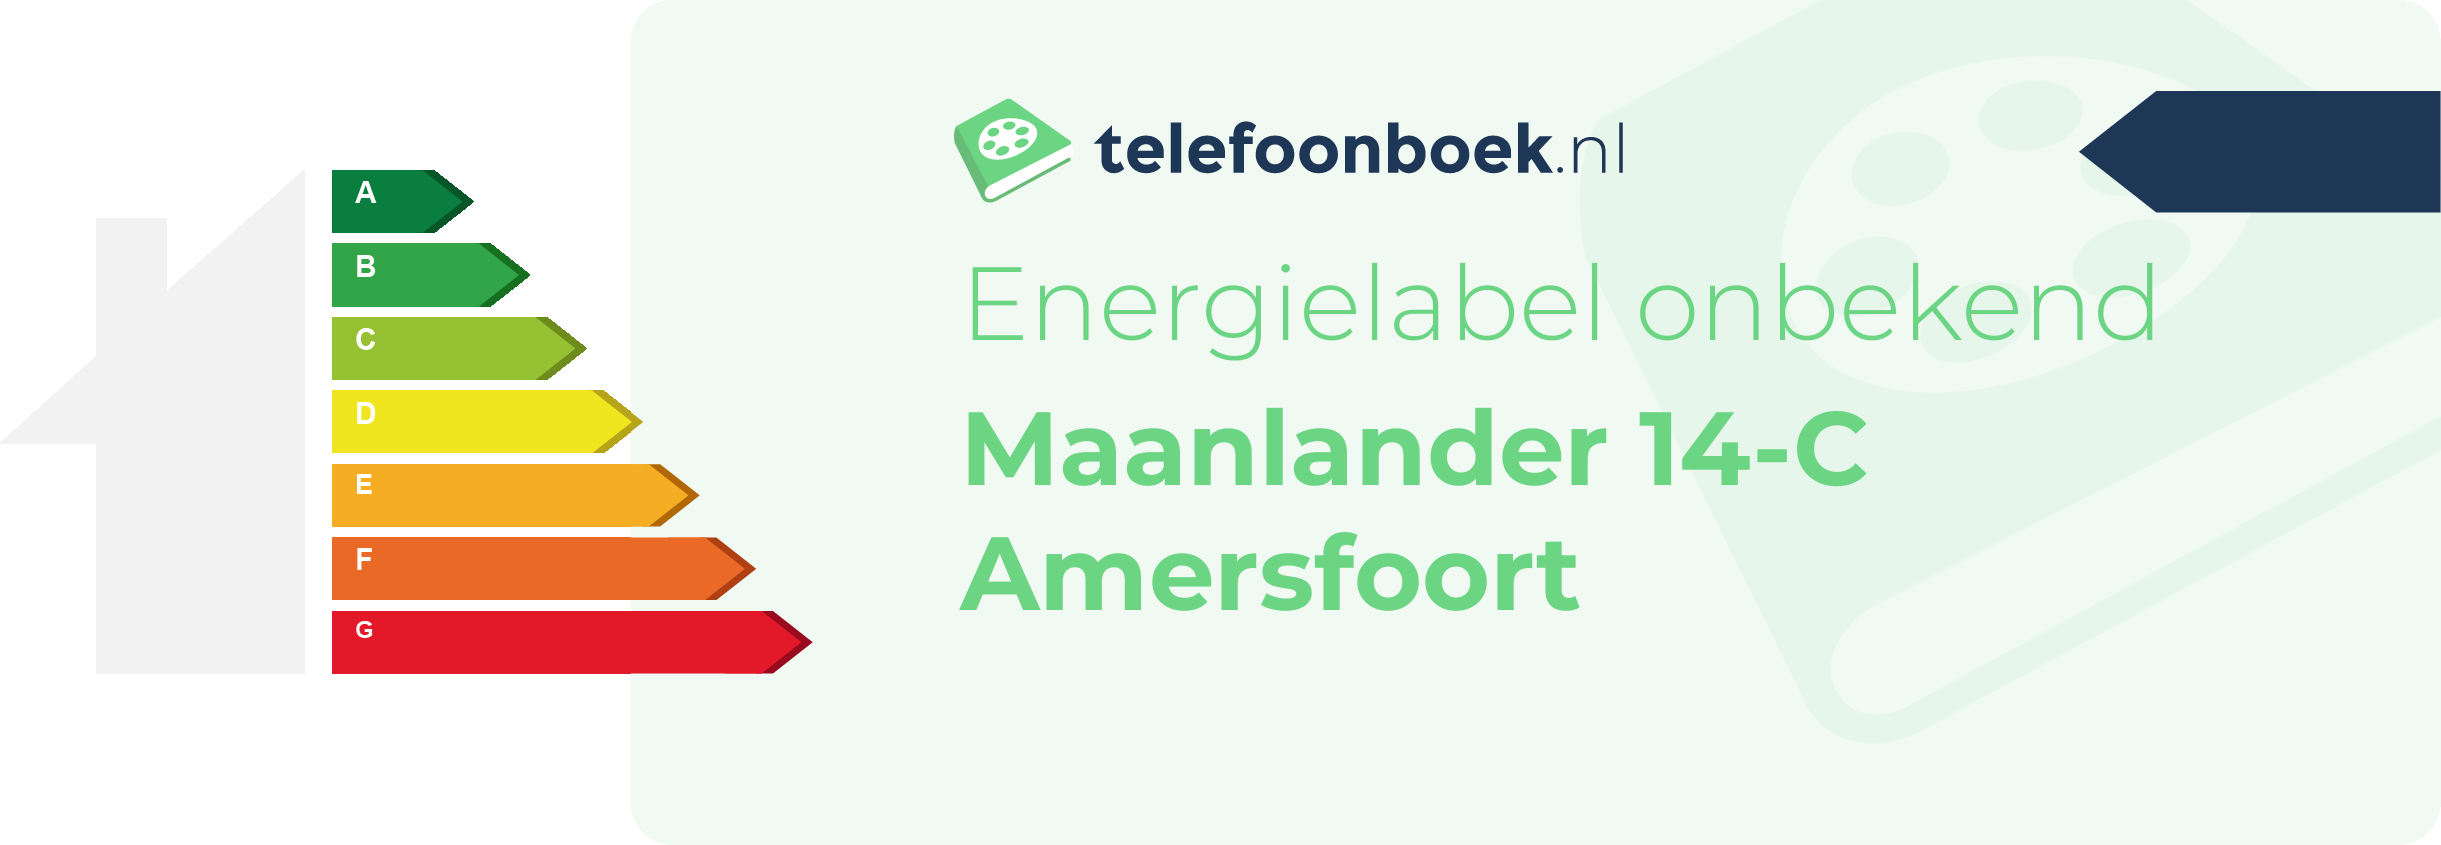 Energielabel Maanlander 14-C Amersfoort